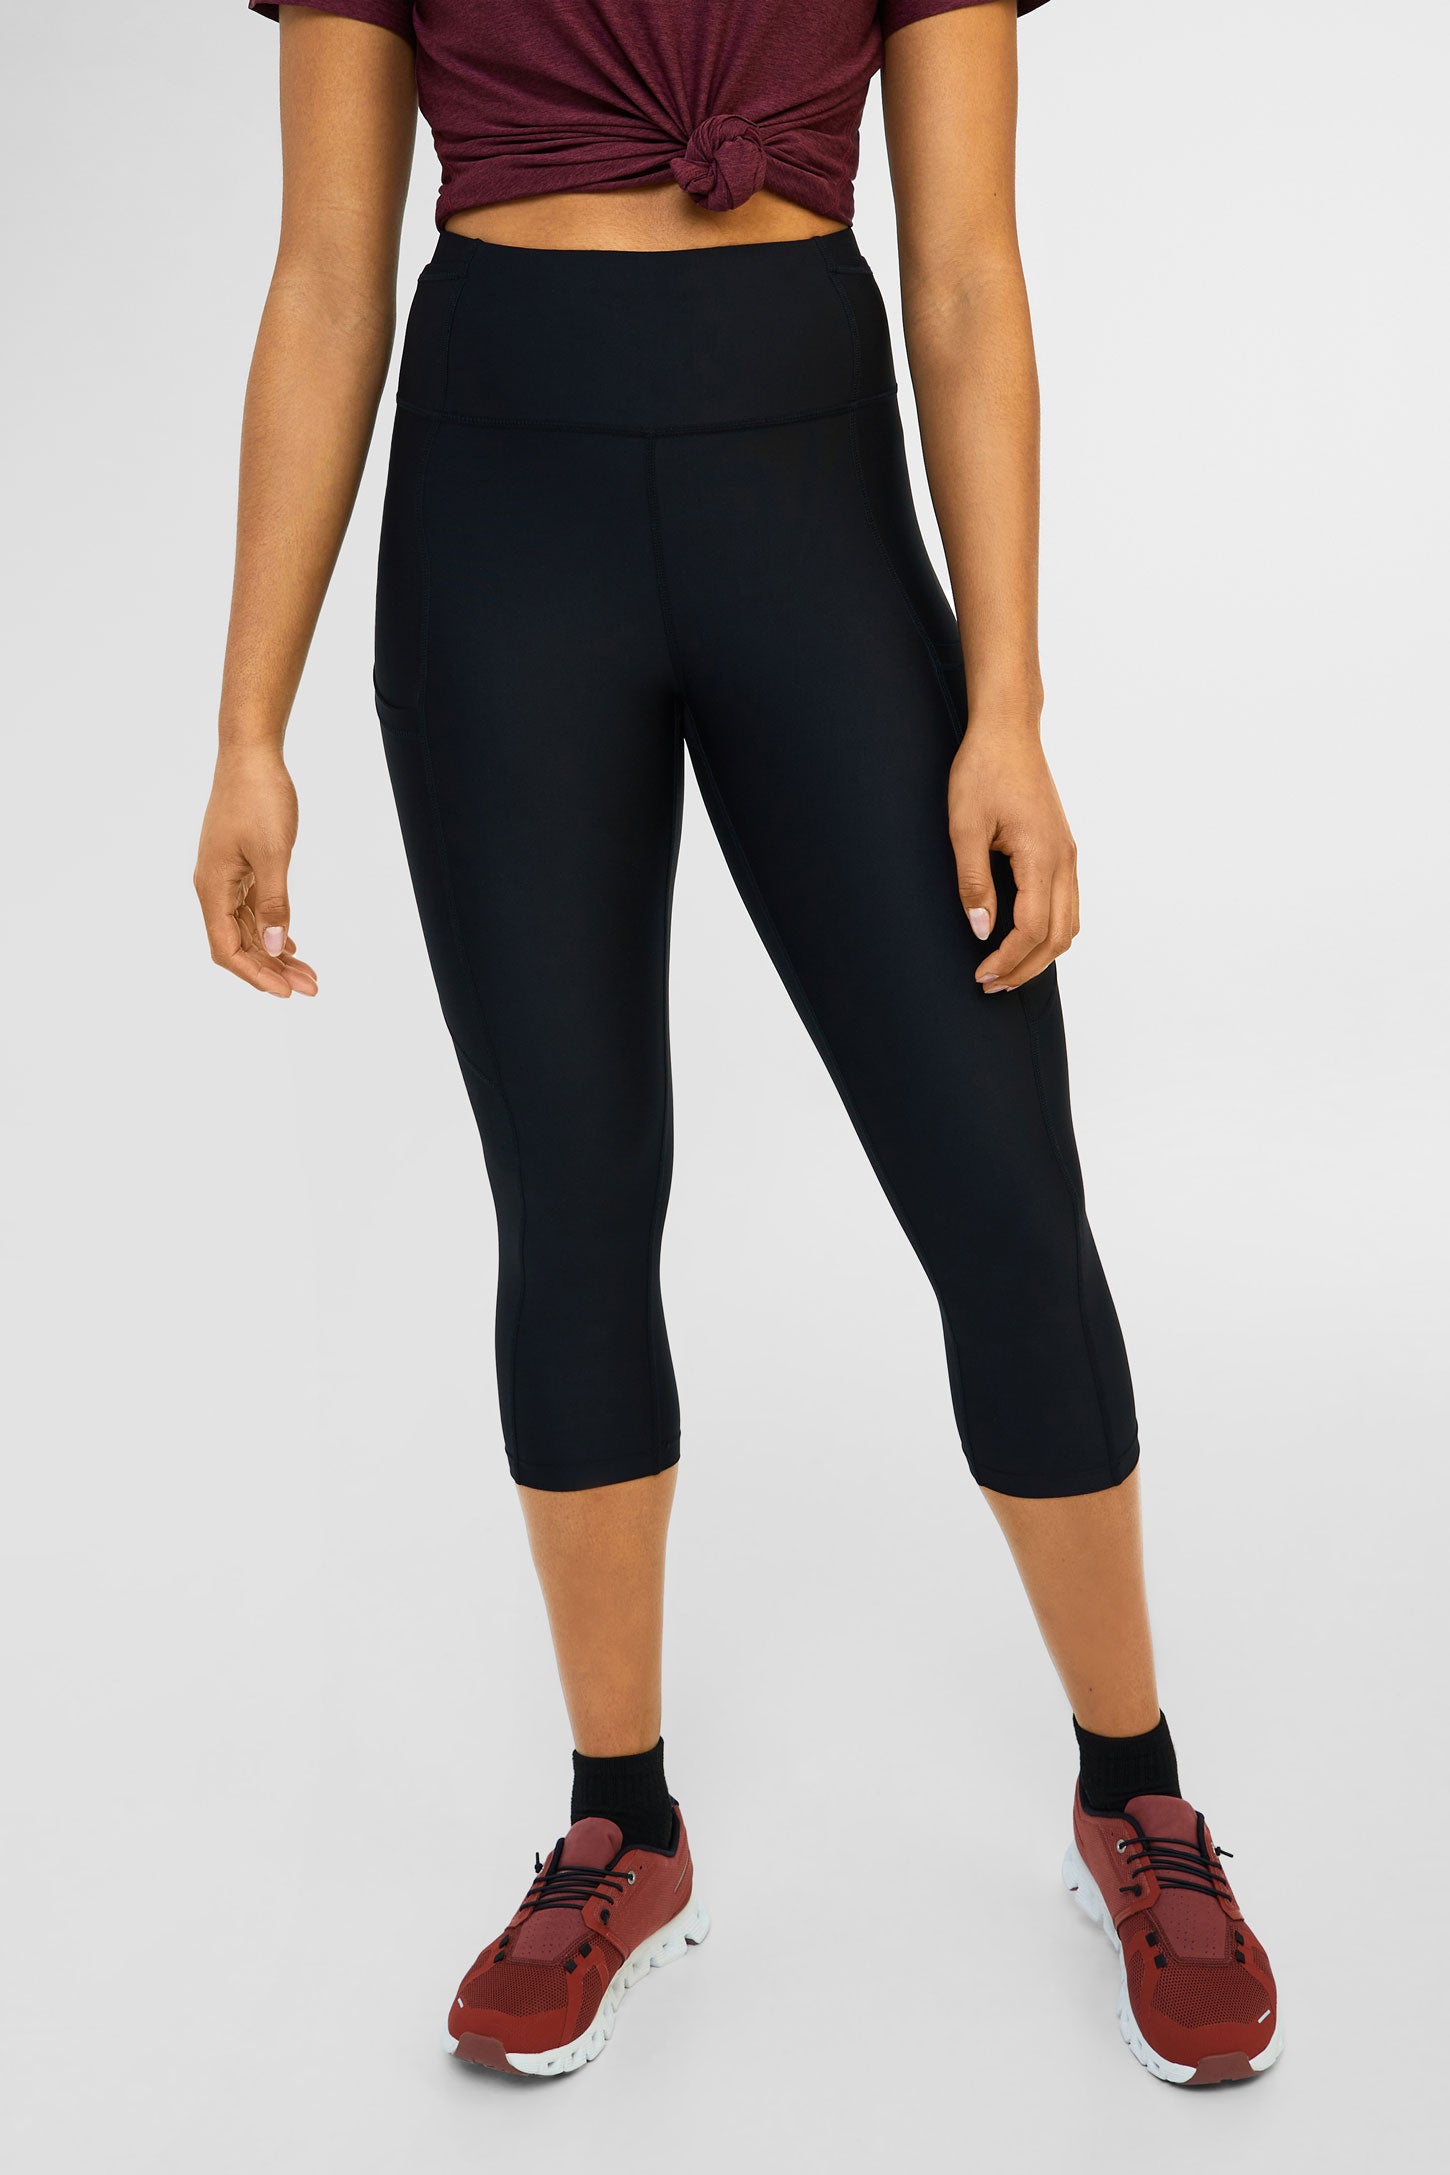 19'' athletic capri leggings, Flex - Women